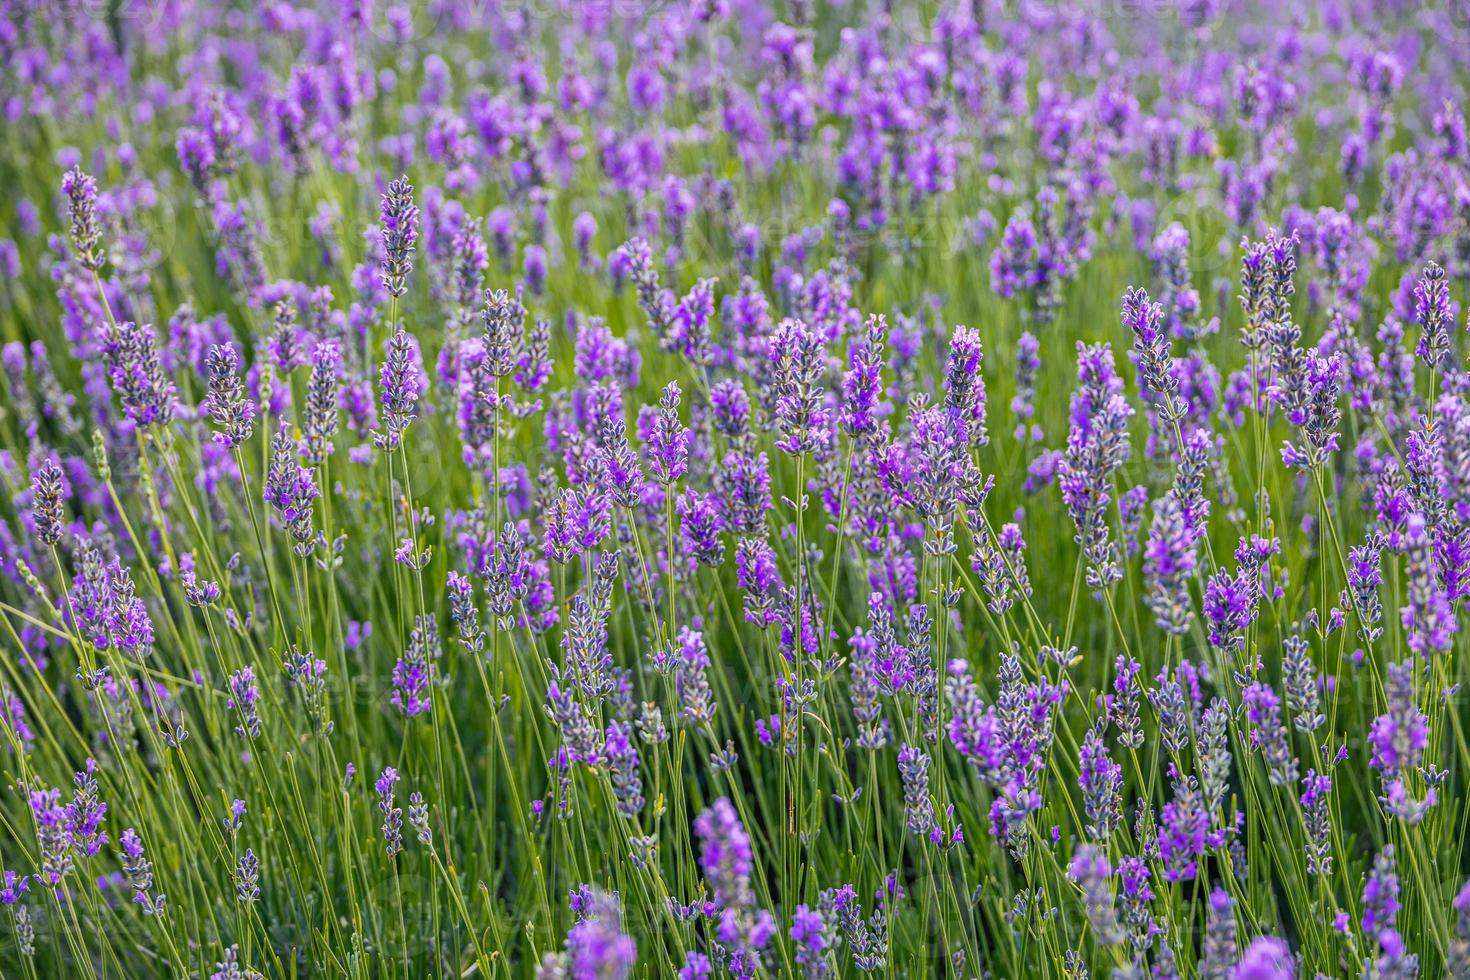 Purper lavendel bloem groeit in een warm groen zomer tuin in de stralen van de zon foto